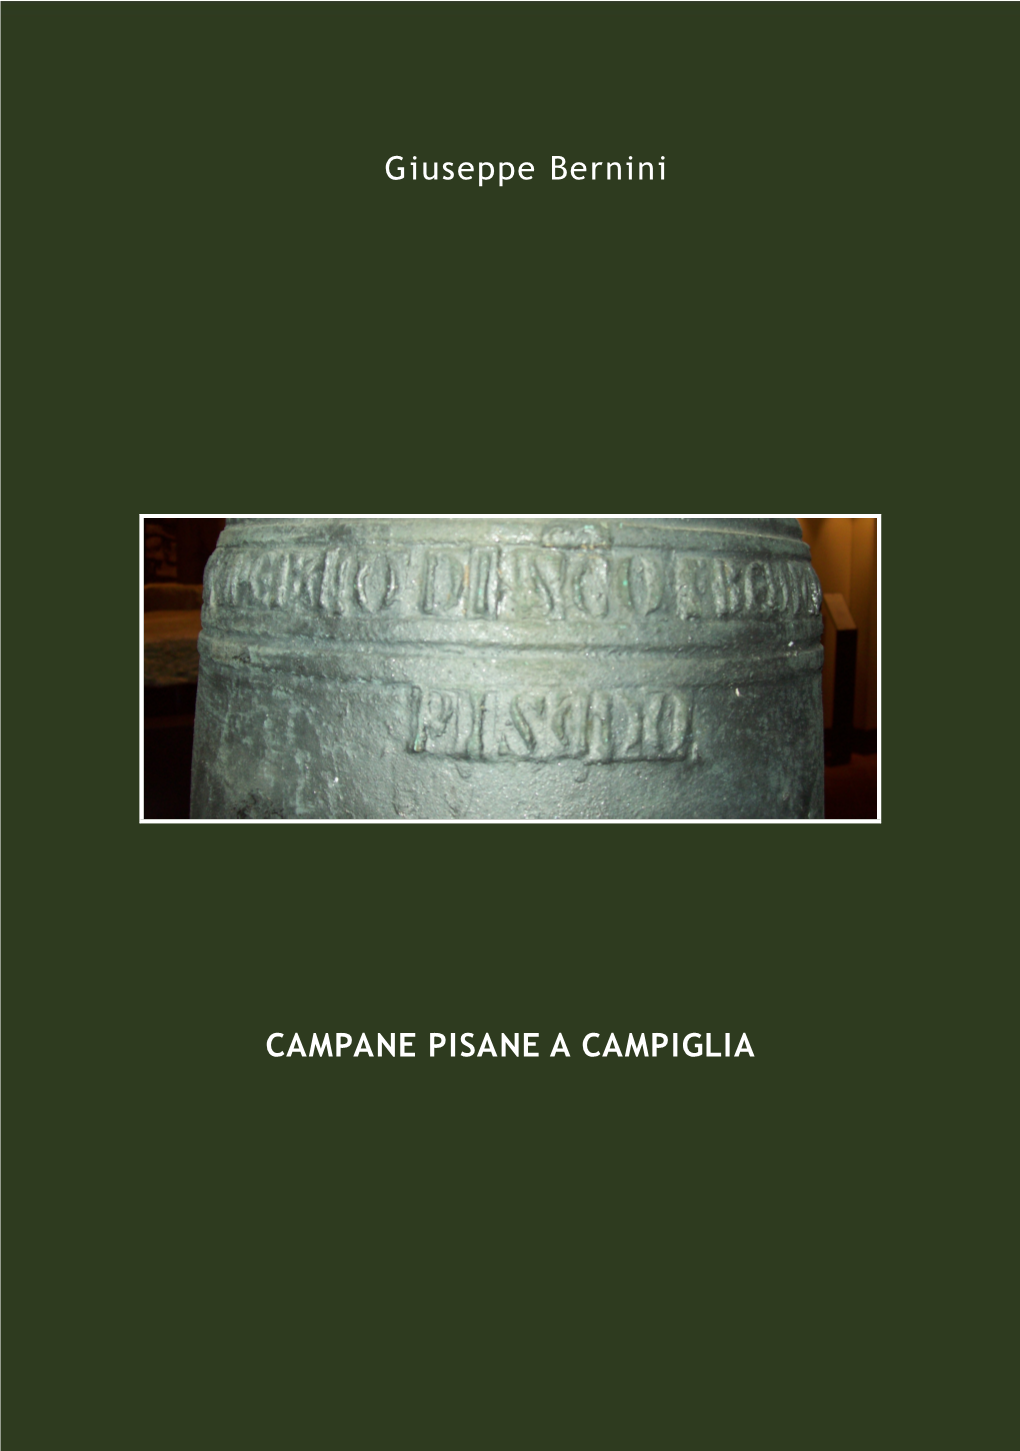 CAMPANE PISANE a CAMPIGLIA Giuseppe Bernini